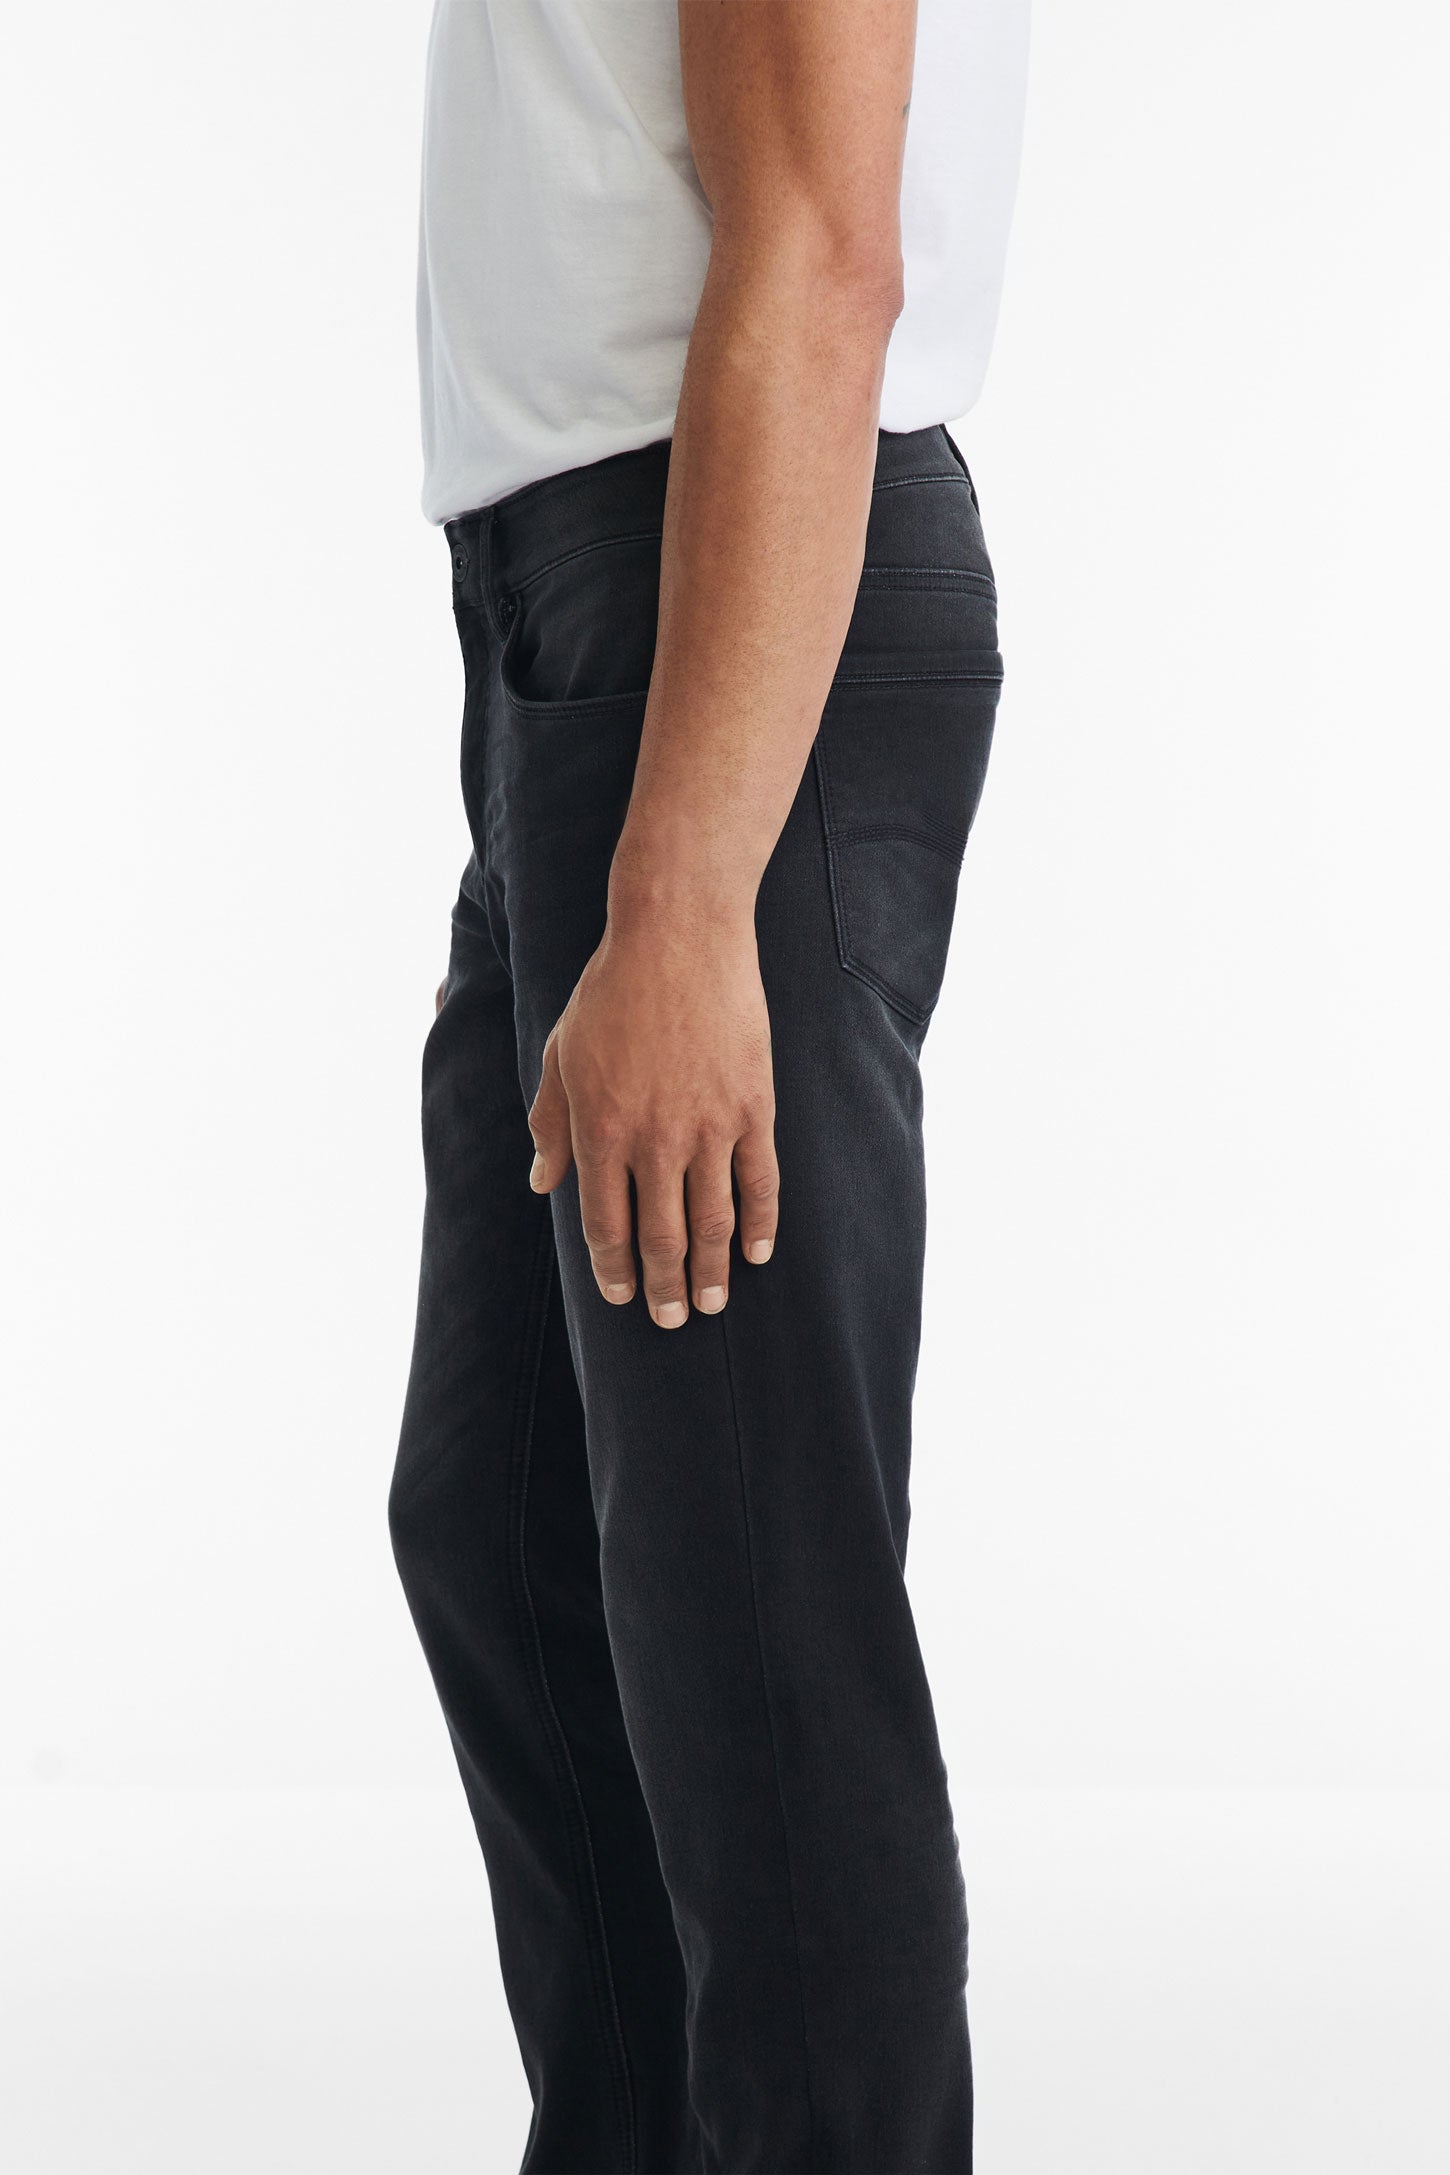 Jeans 5 poches coupe régulière 32'' - Homme && CHARBON